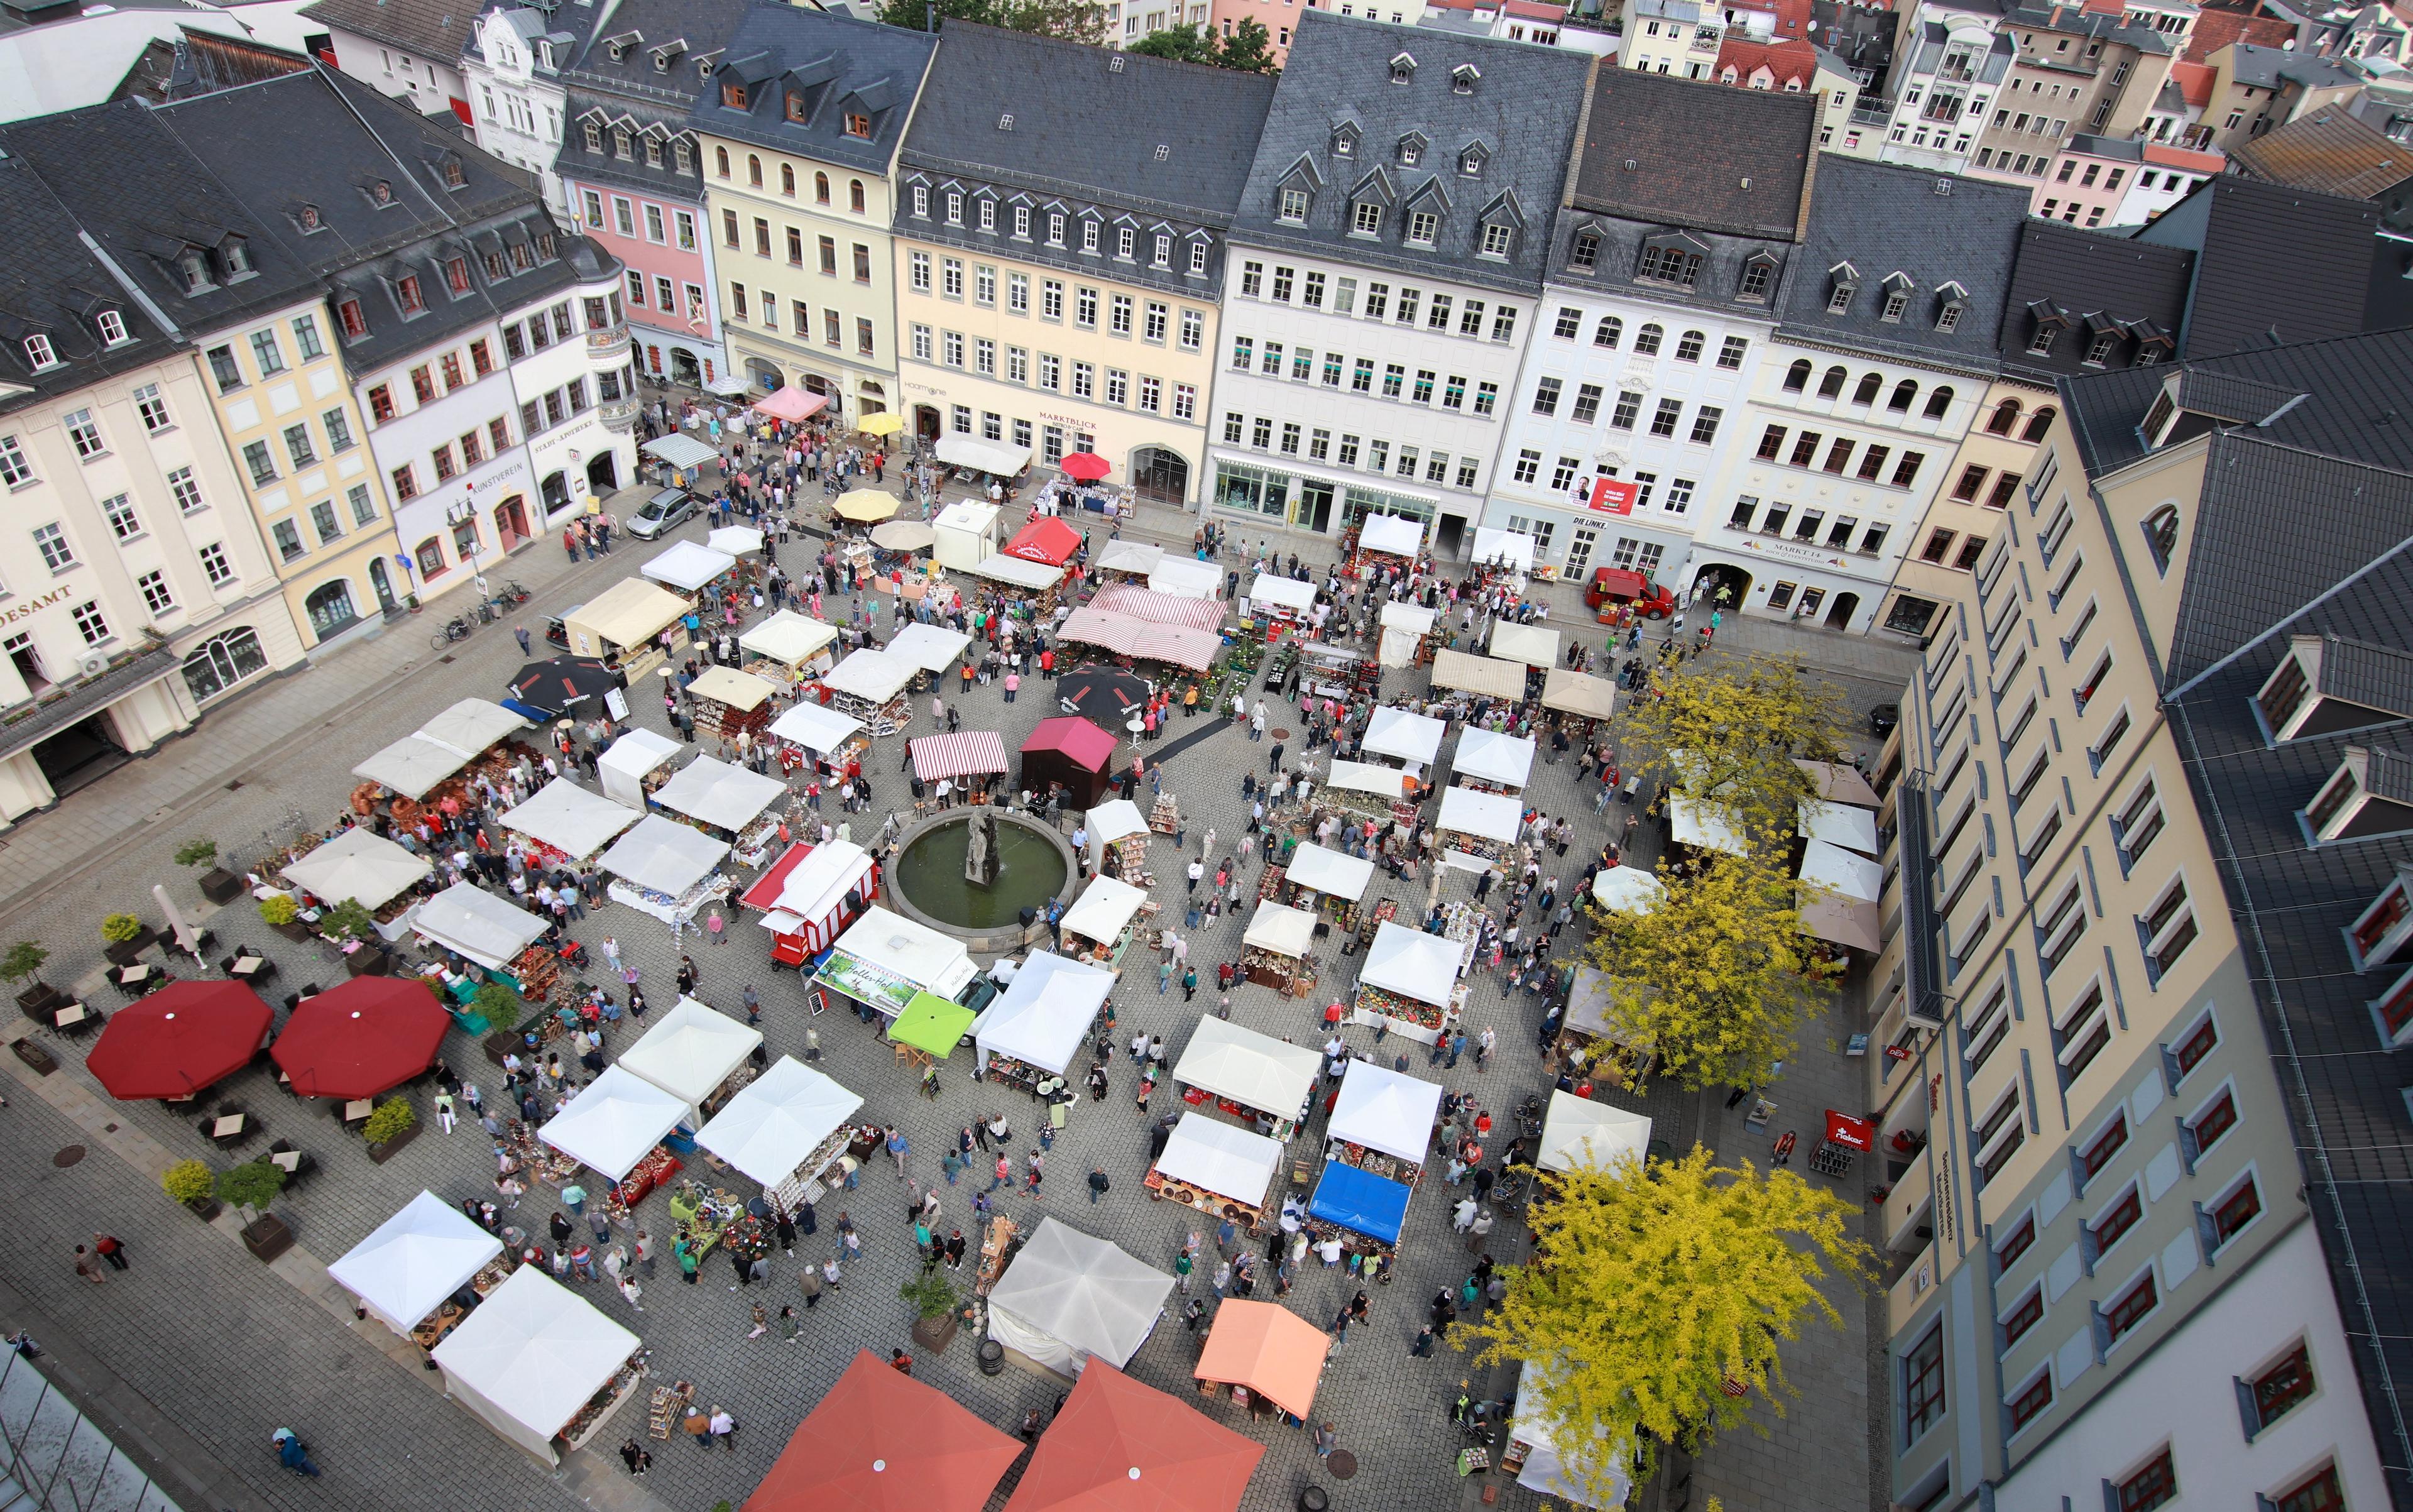 Marktplatz von oben mit vielen Ständen und Besuchern. 